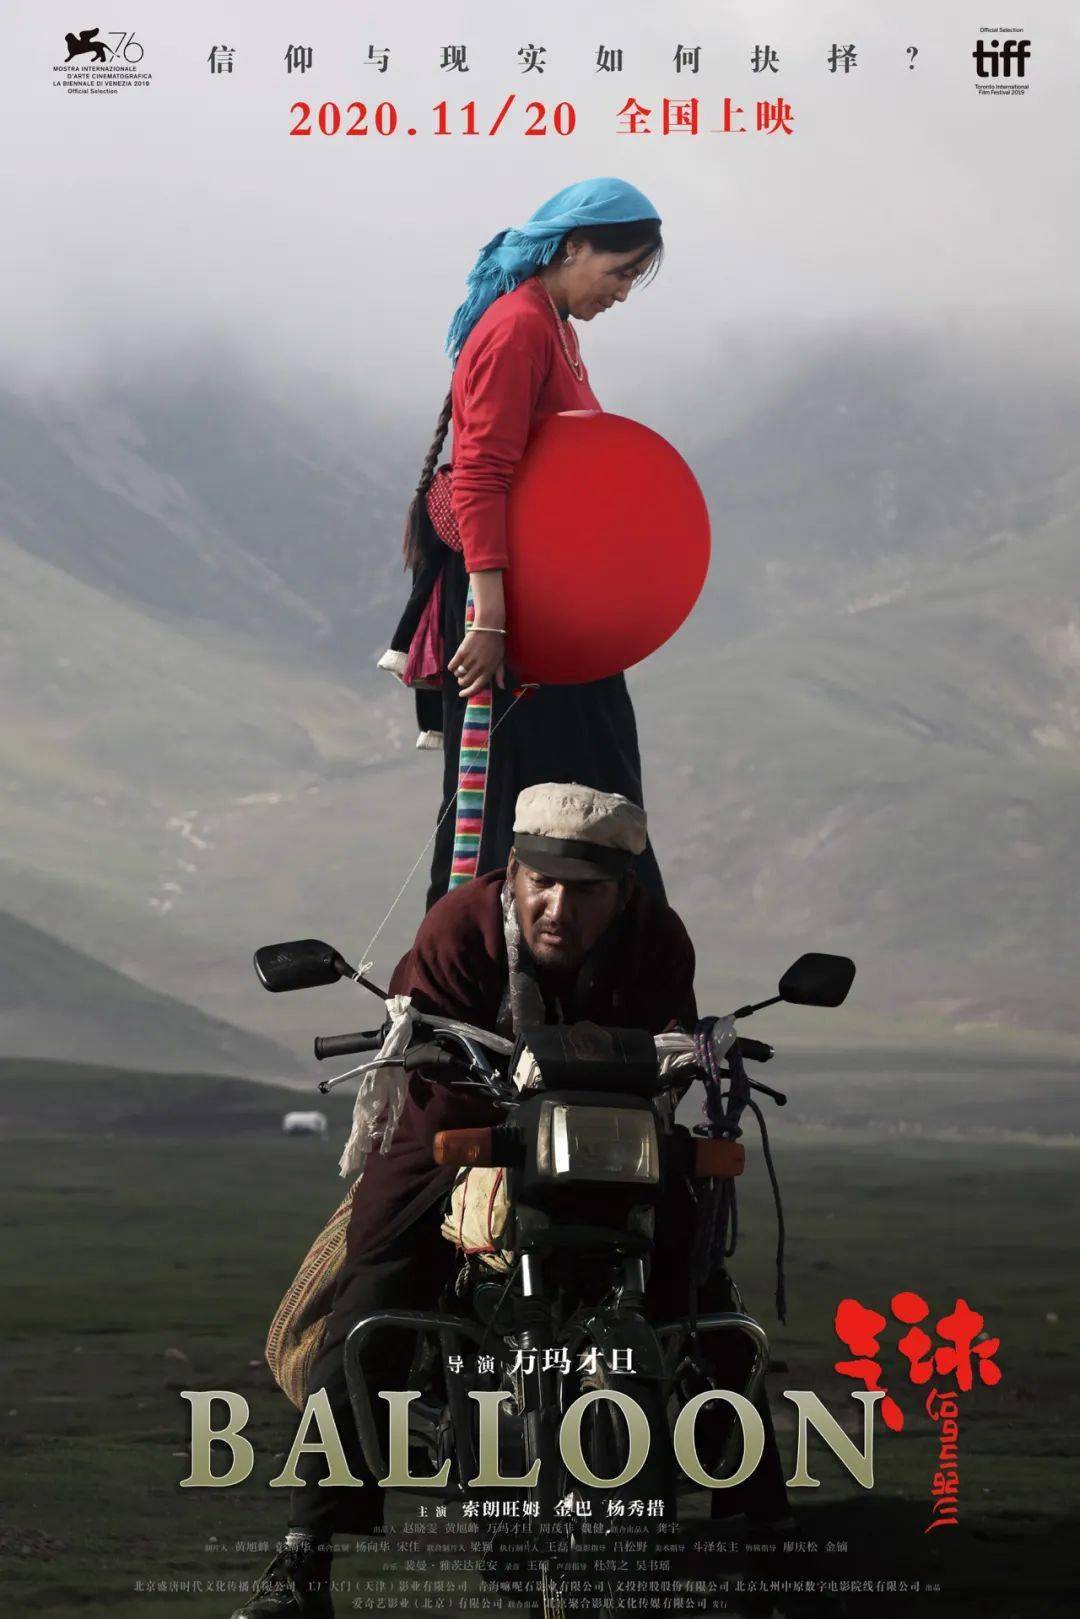 《气球》,这是我看过的第一部藏族导演拍摄的藏语电影,也是我近期看过